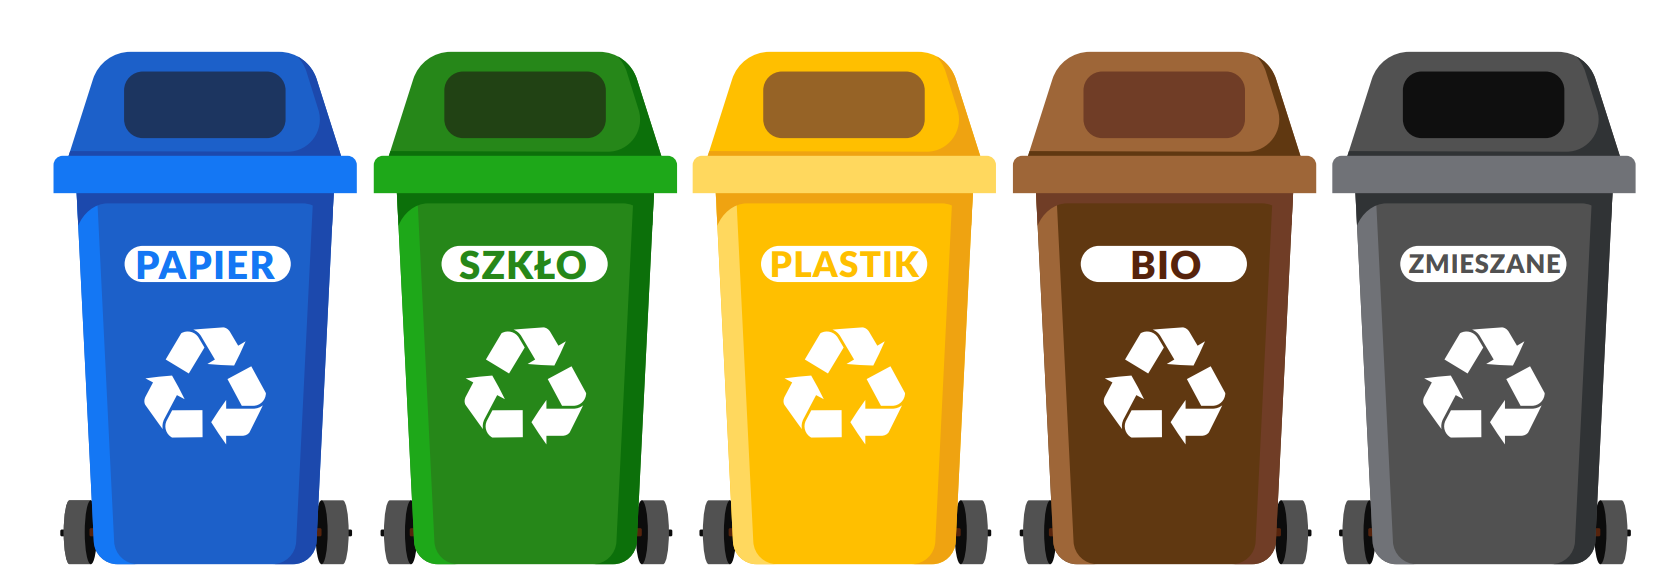 Zdjęcie przedstawia pojemniki koloru przeznaczone dla danej frakcji odpadów 